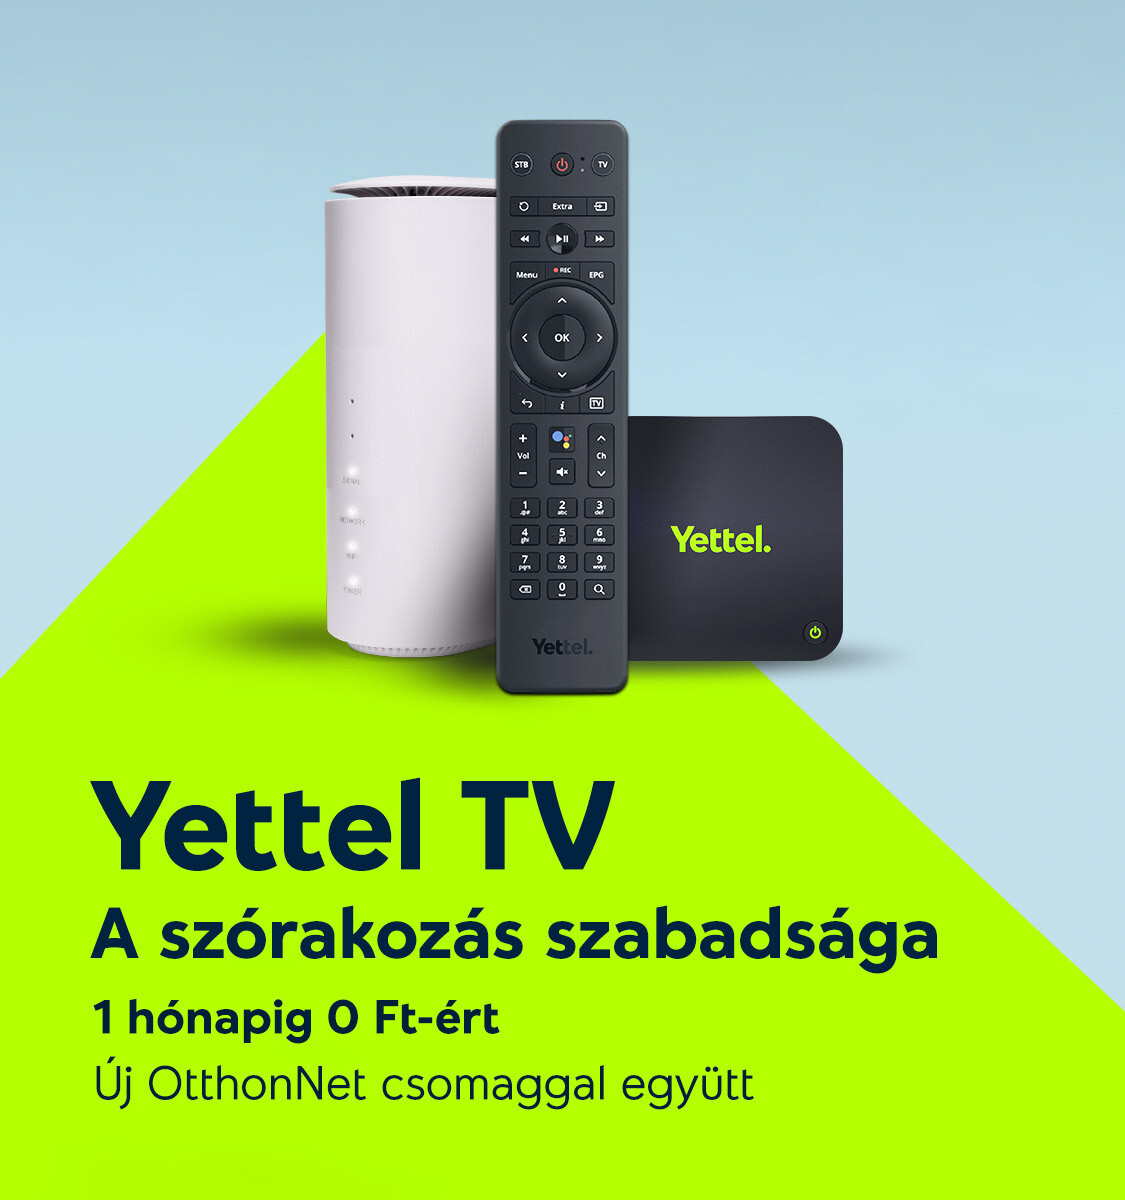 Otthoni internet + TV csomag. Yettel TV - a szórakozás szabadsága